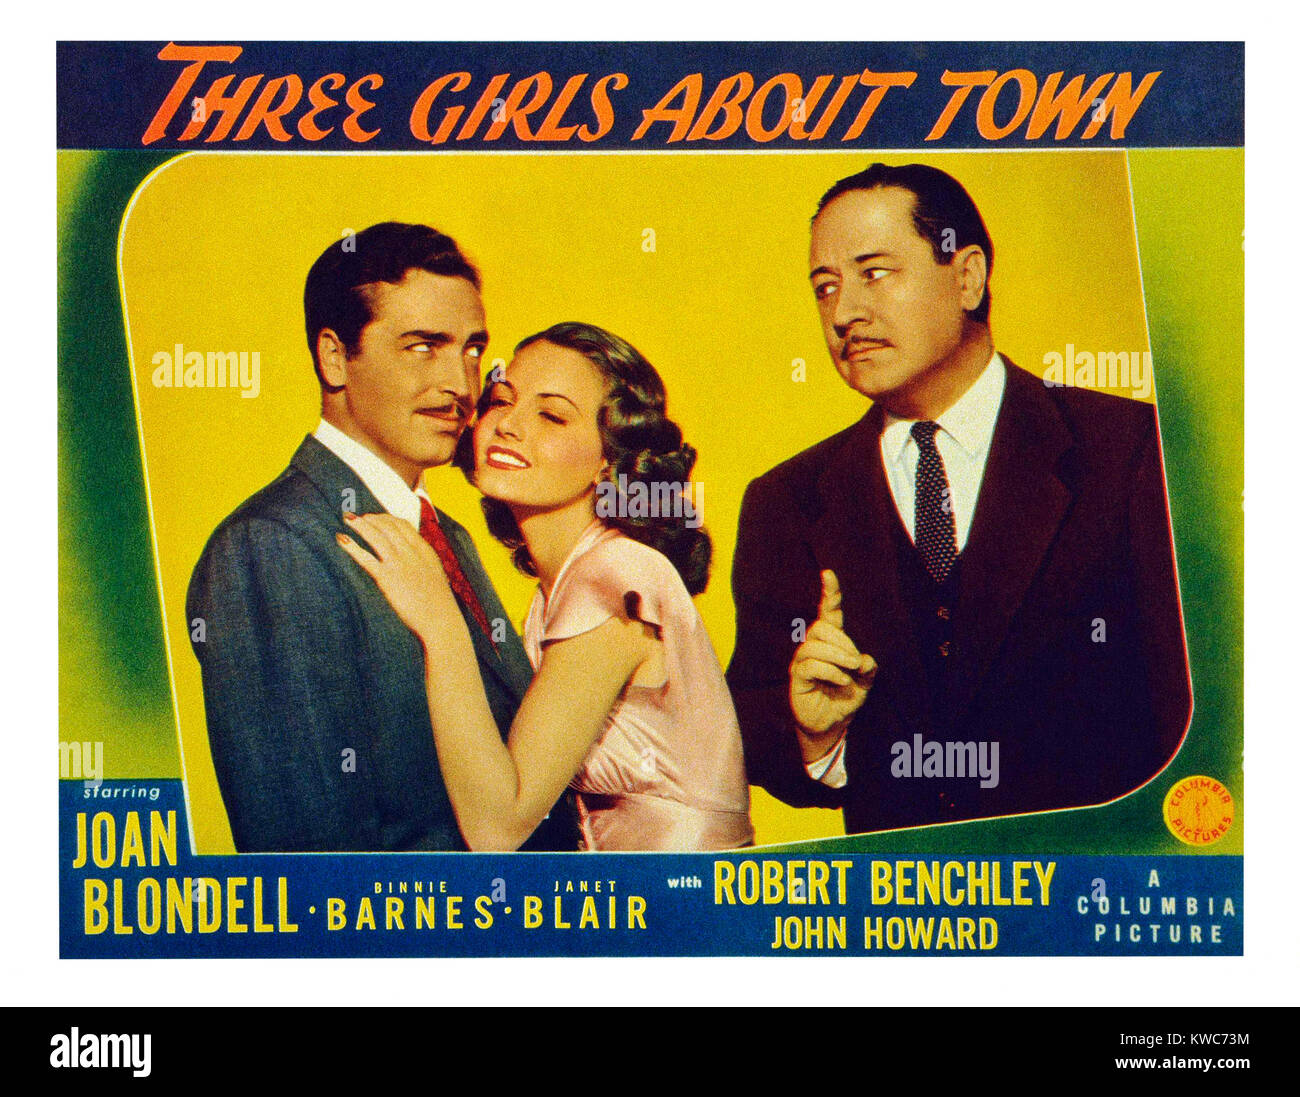 Tres niñas alrededor de la ciudad, nosotros lobbycard, de izquierda a derecha: John Howard, Janet Blair, Robert Benchley, 1941 Foto de stock